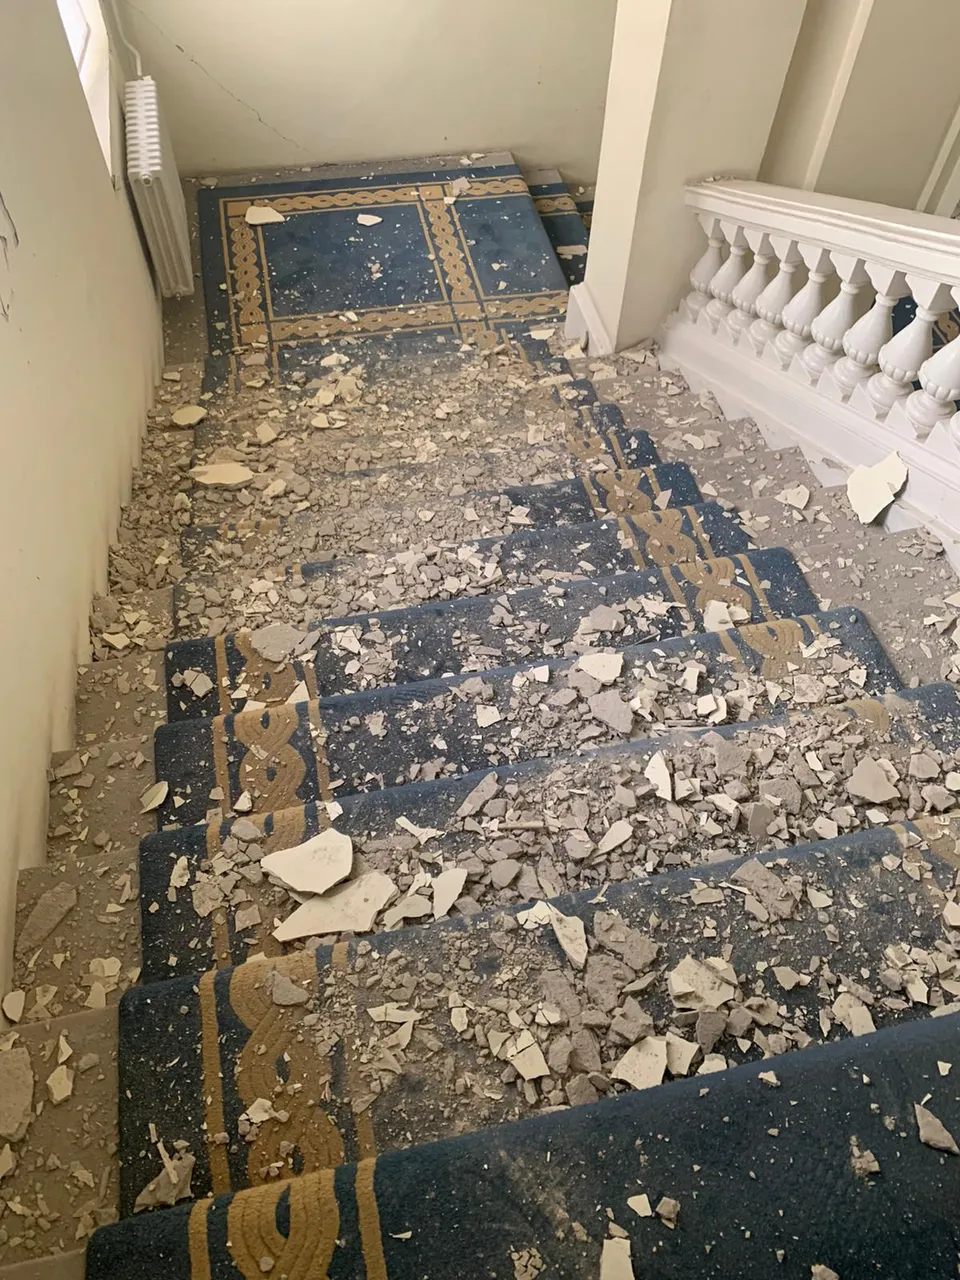 Razorni potres u Zagrebu uništio je i zgradu Županijskog suda